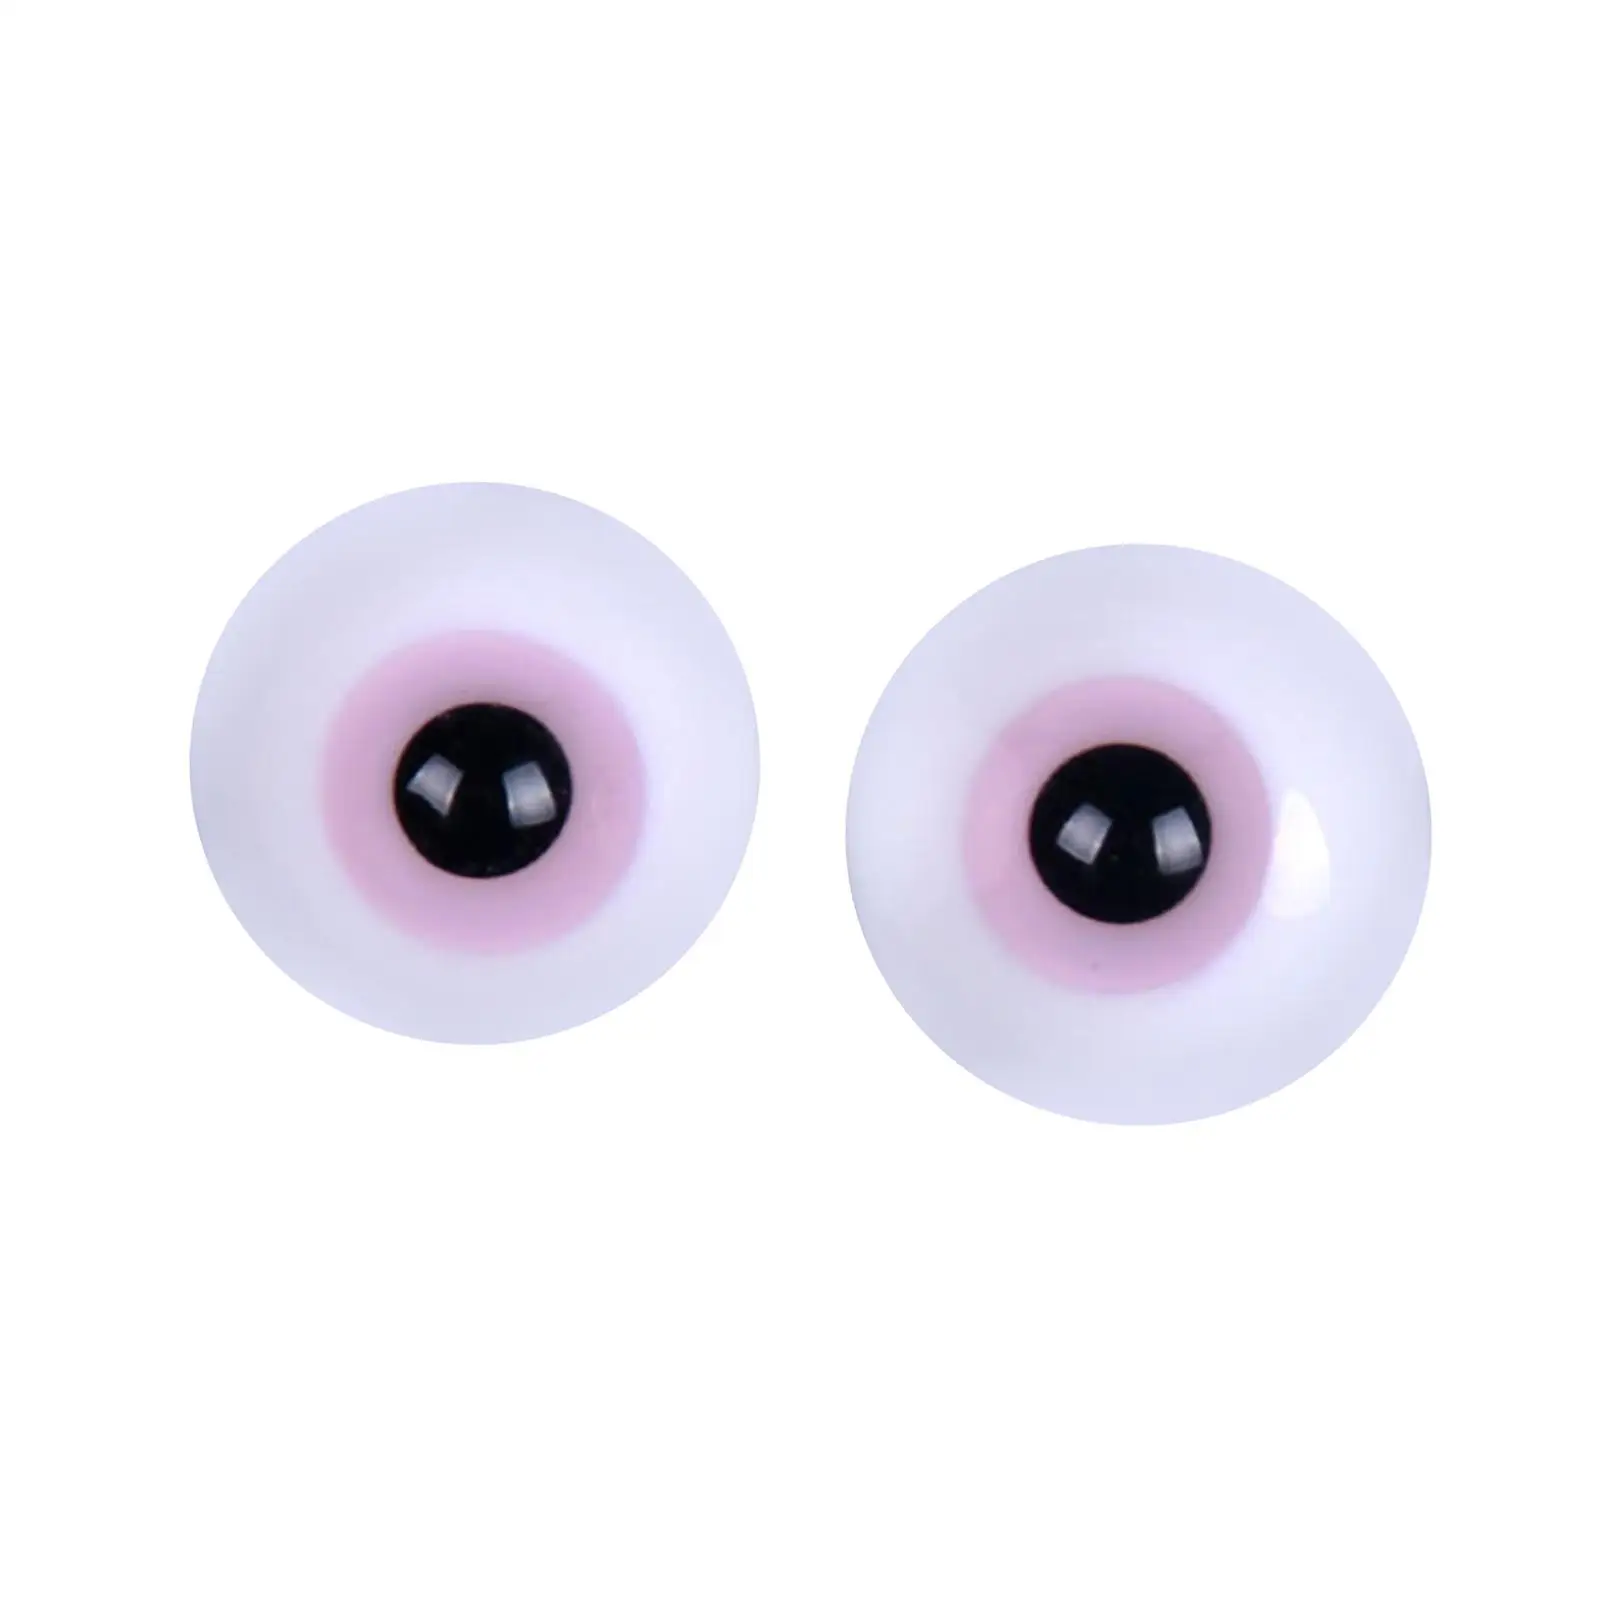 2шт Большие кукольные глаза, шевелящиеся глаза (6 мм), подвижные художественные поделки, глазное яблоко для изготовления кукол, скульптура, реквизит для Хэллоуина Изображение 4